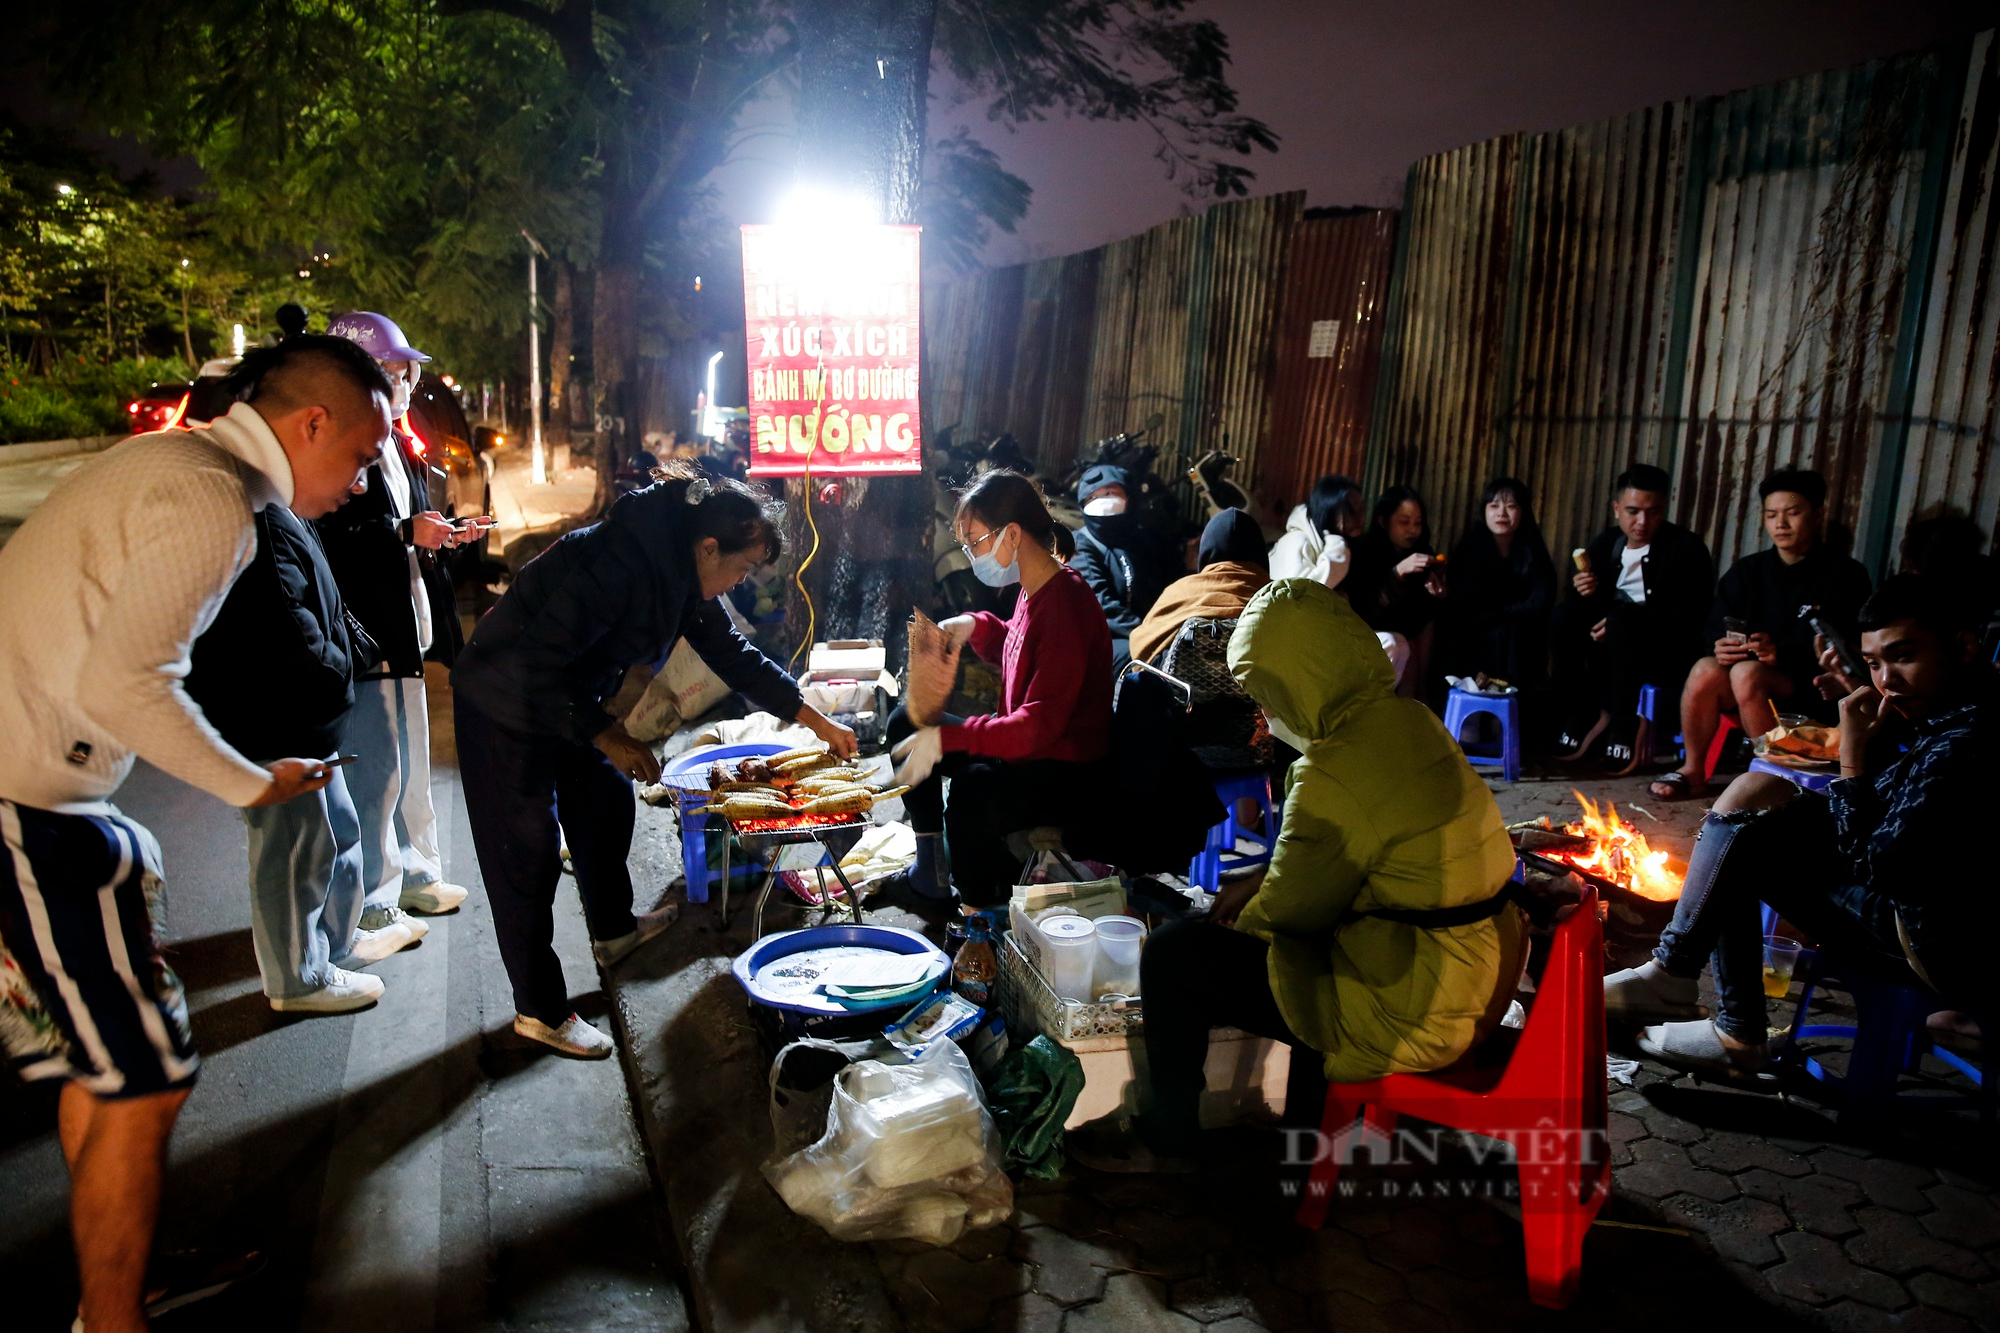 Giới trẻ Hà Nội đổ xô ra hồ Tây sưởi ấm, ăn ngô nướng giữa đêm đông lạnh giá - Ảnh 2.